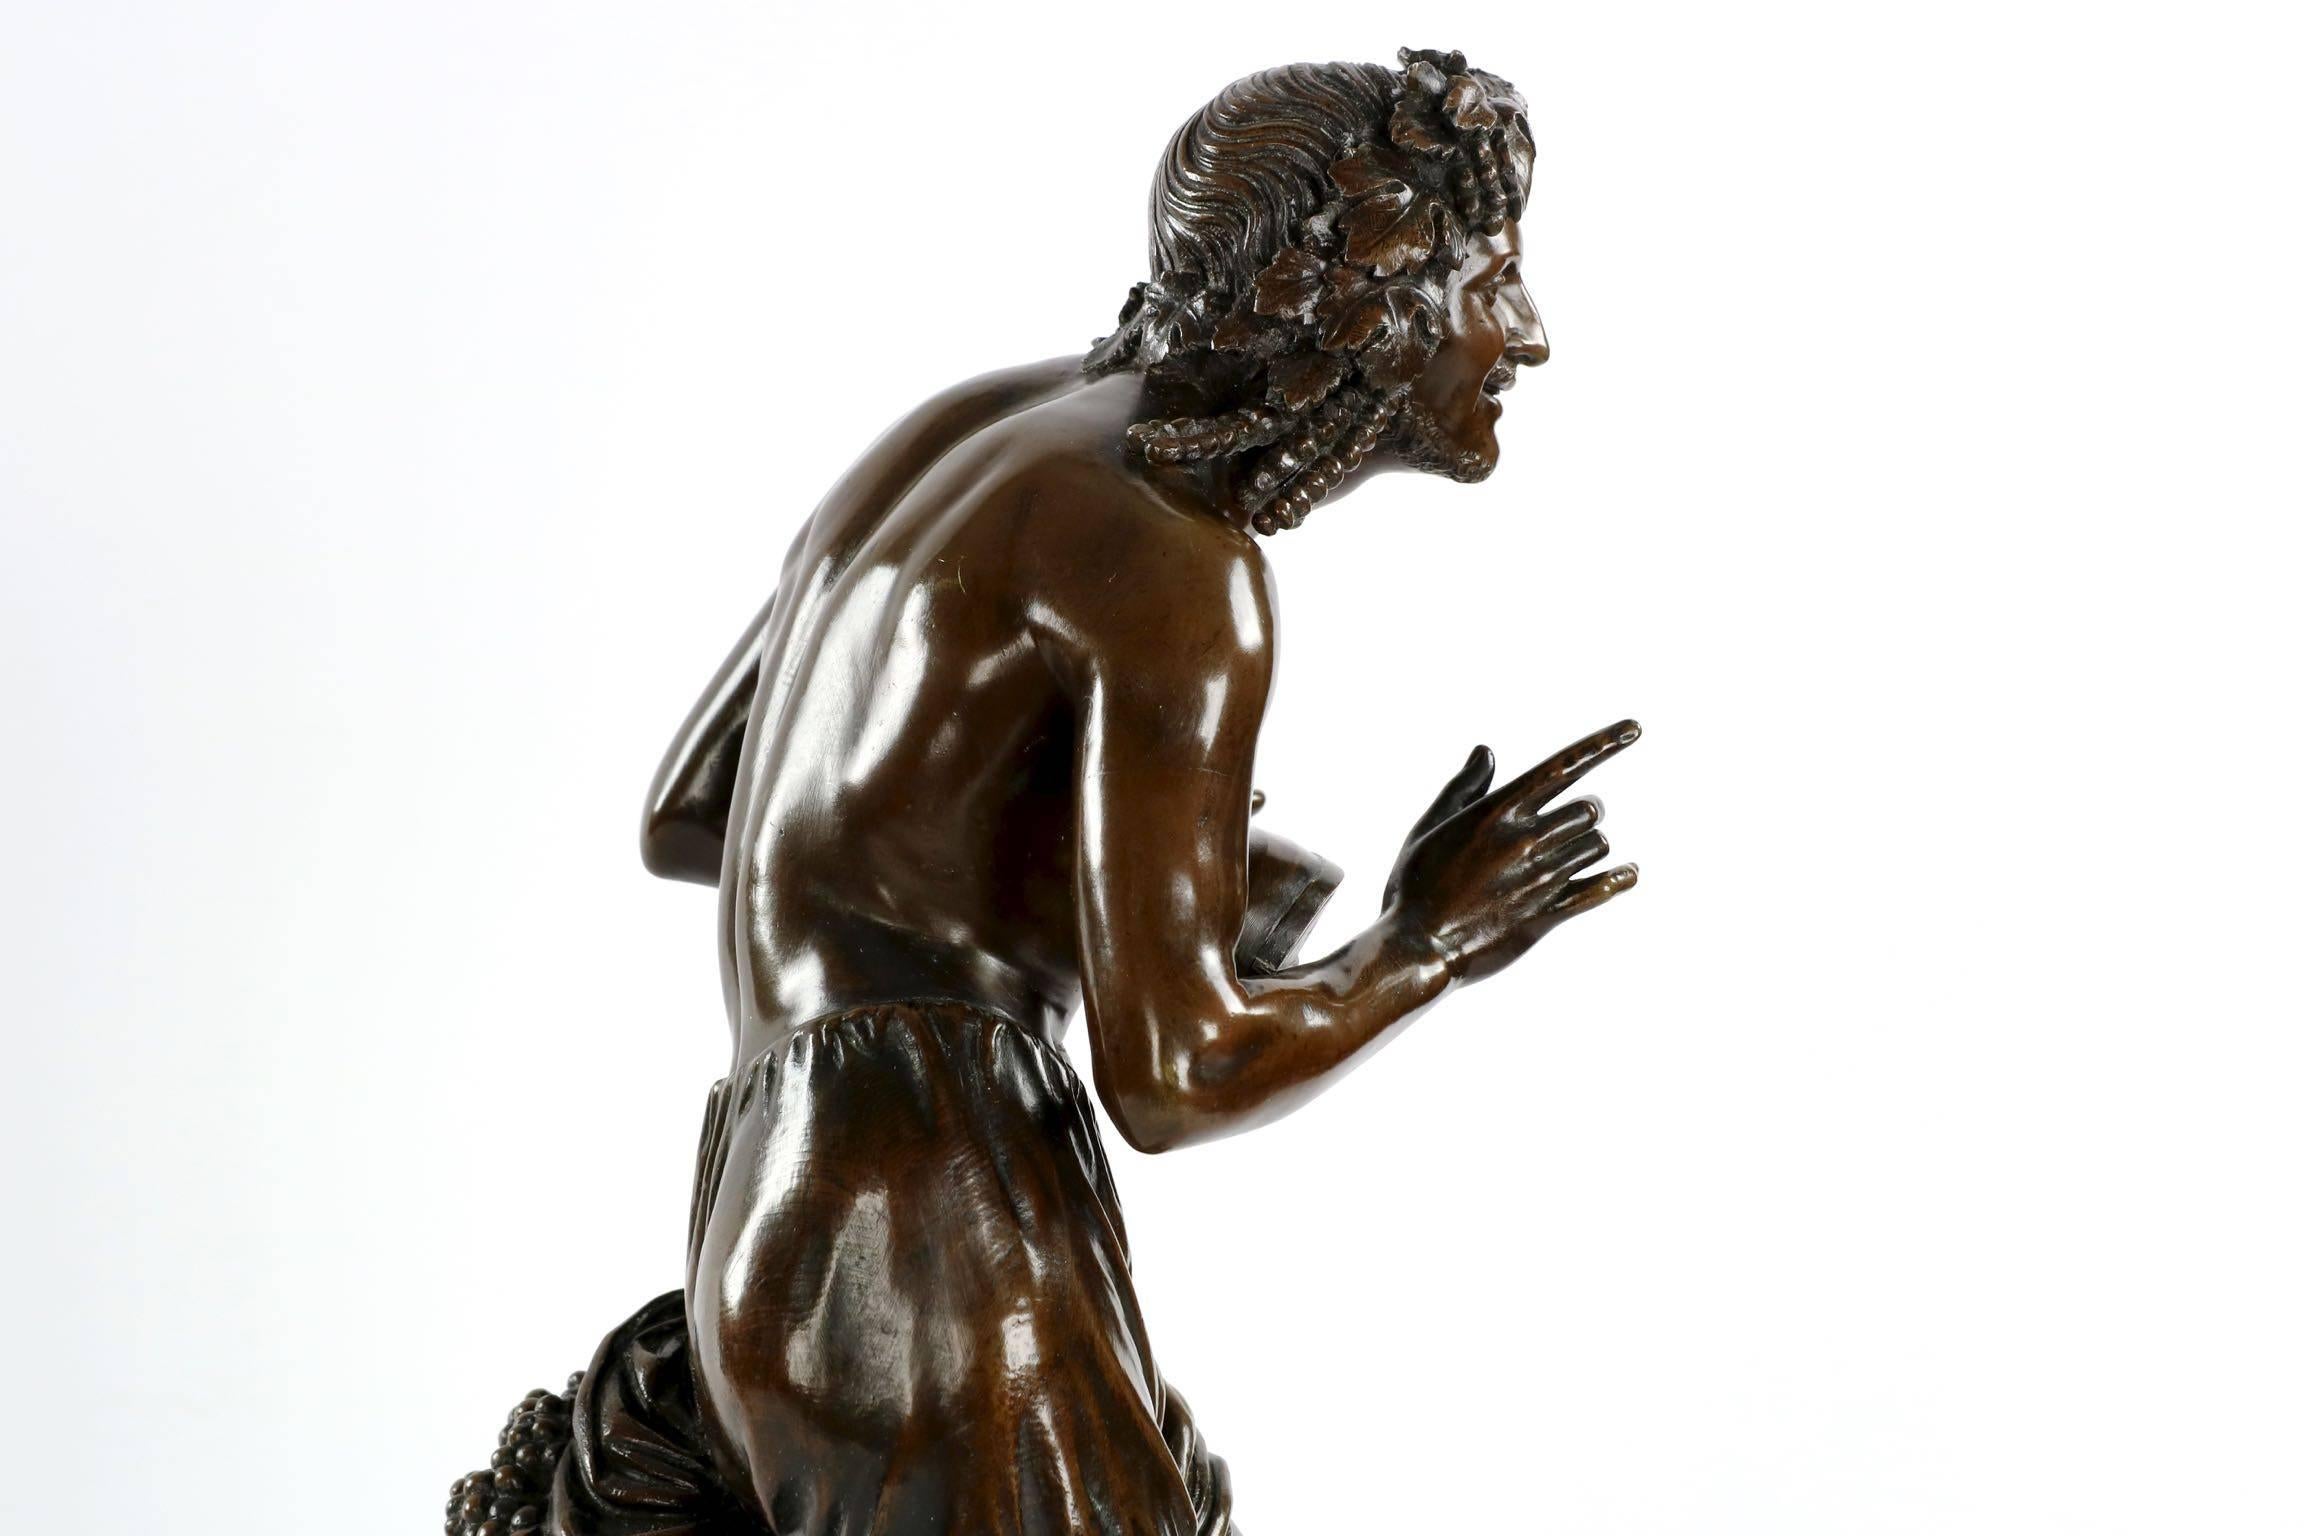 “Improvisateur” Antique French Bronze Sculpture by François-Joseph Duret 1